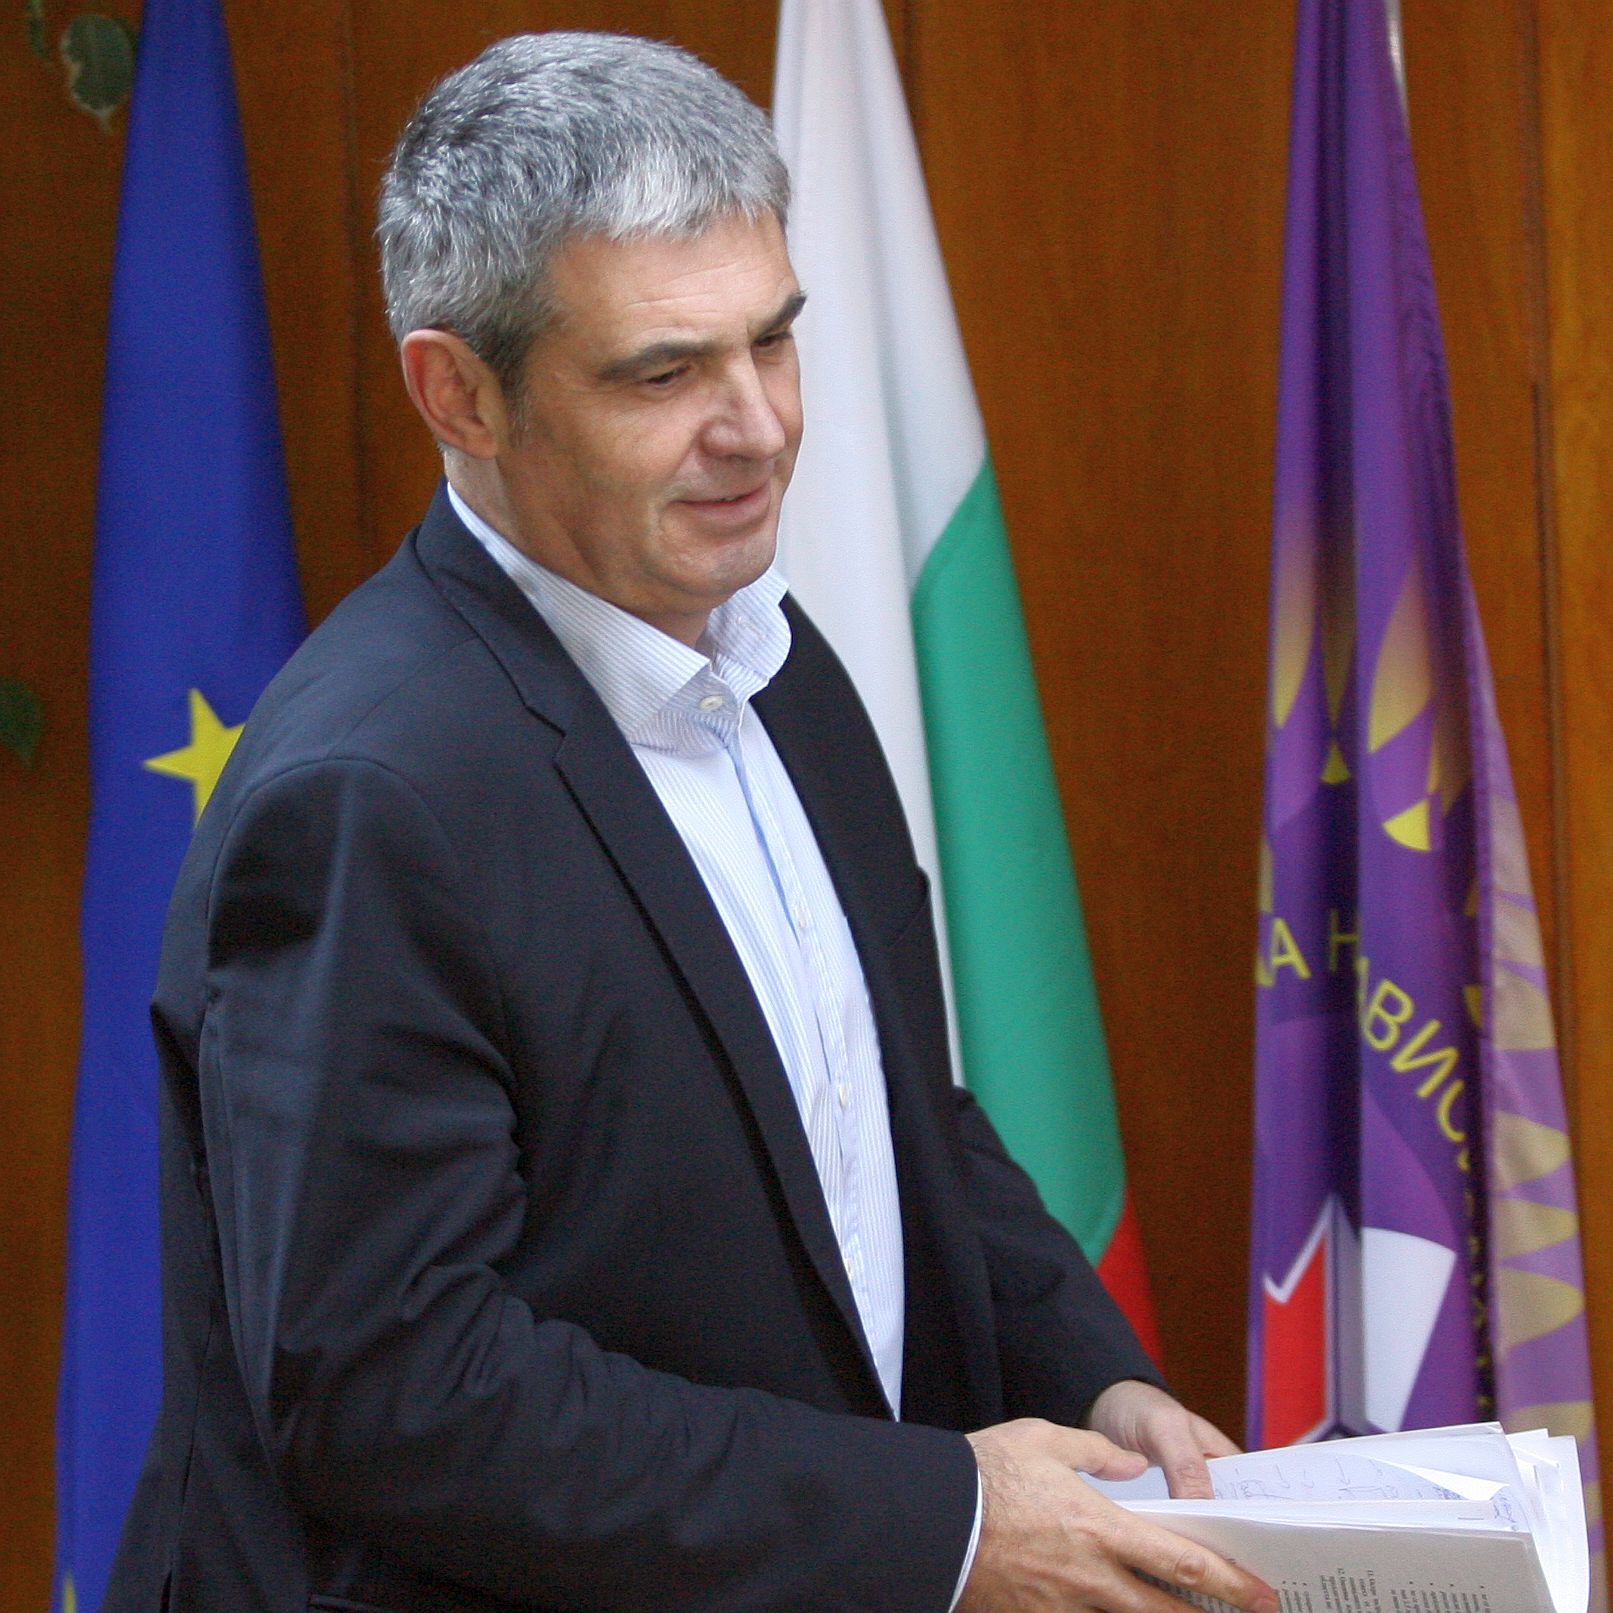 Исканията на синдиката към бюджета са удовлетворени от изпълнителната власт наполовина, каза Пламен Димитров